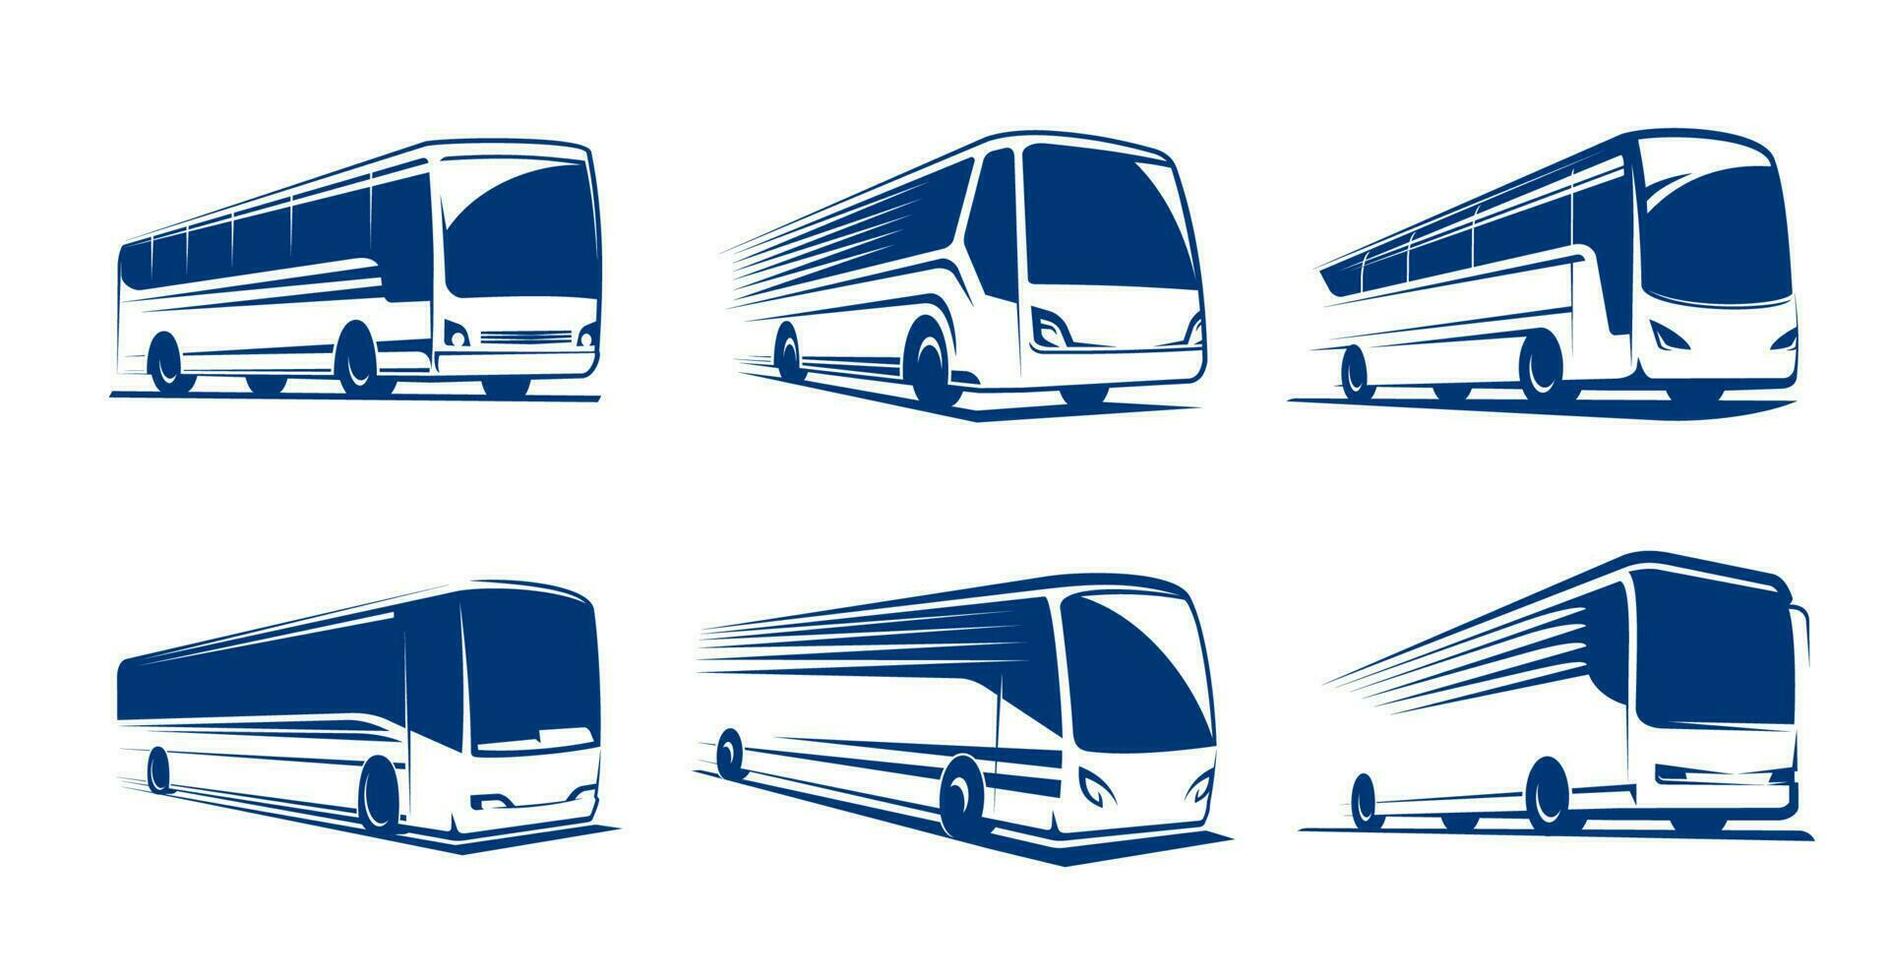 Travel bus icons, tour transport, passenger coach vector